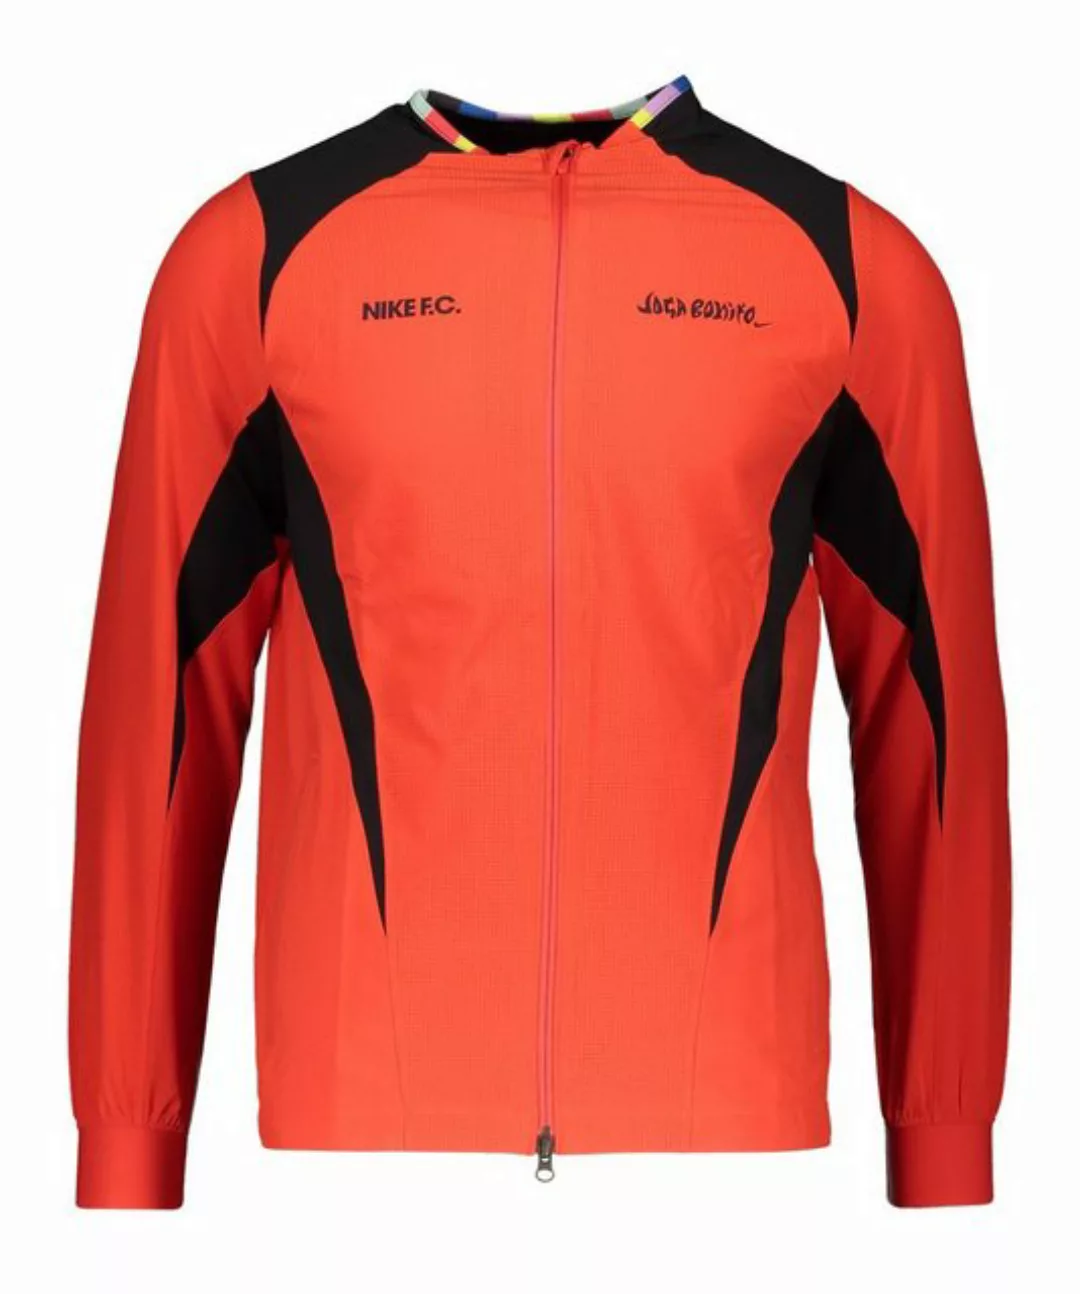 Nike Sportswear Sweatjacke F.C. Joga Bonito Woven Jacke günstig online kaufen